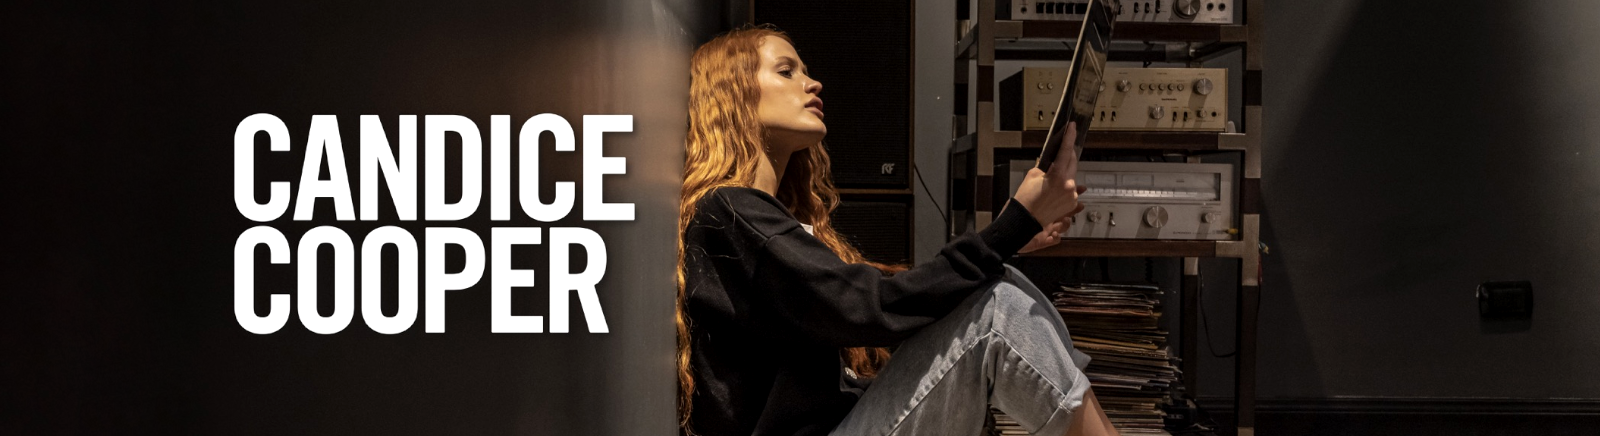 Candice Cooper Herrenschuhe online kaufen im Prange Schuhe Shop